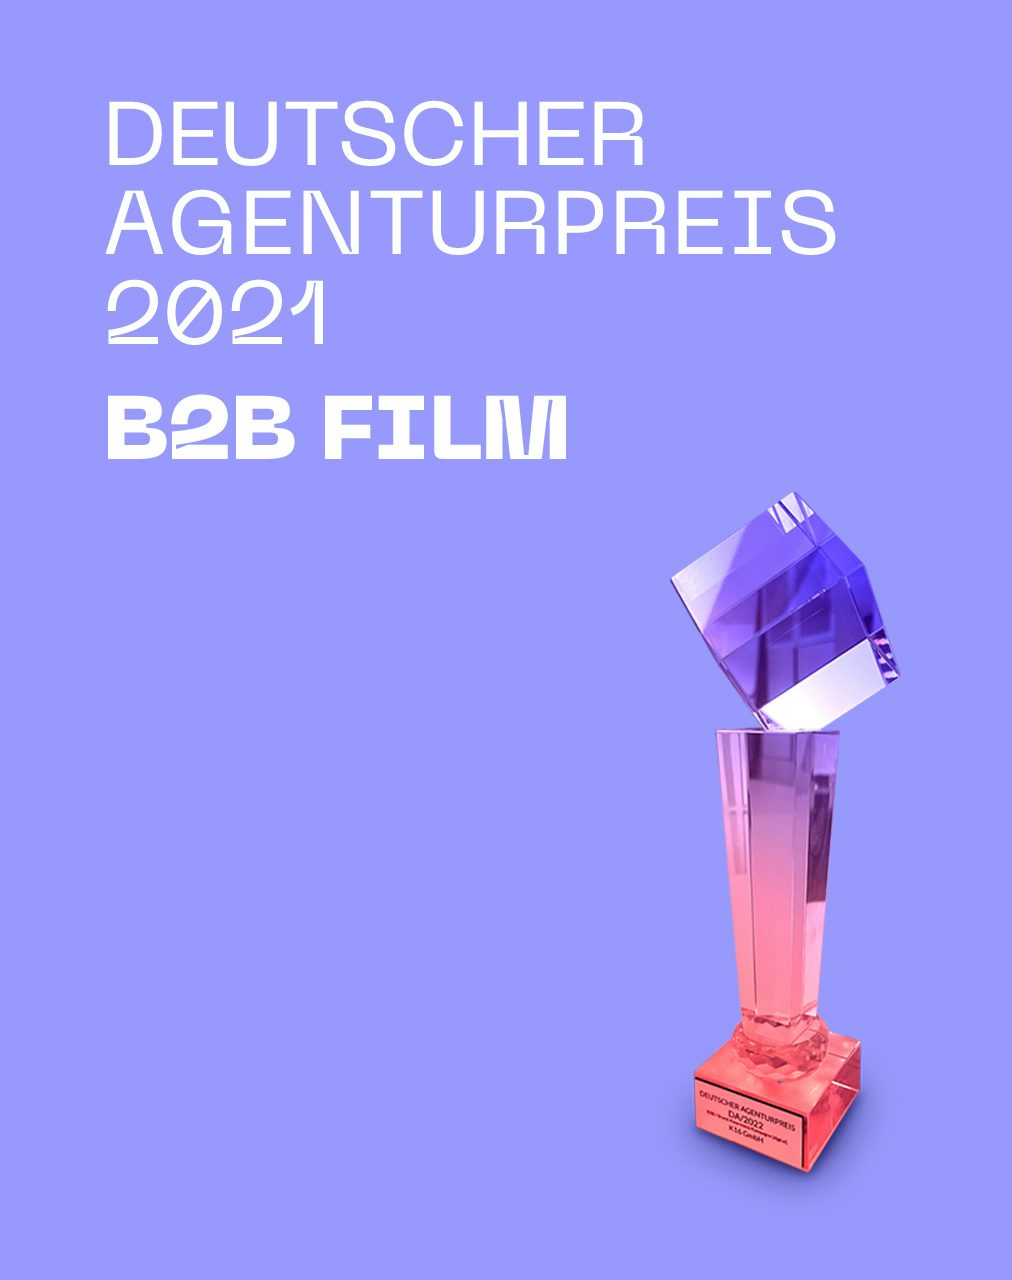 Deutscher Agenturpreis 2021 für B2B Film